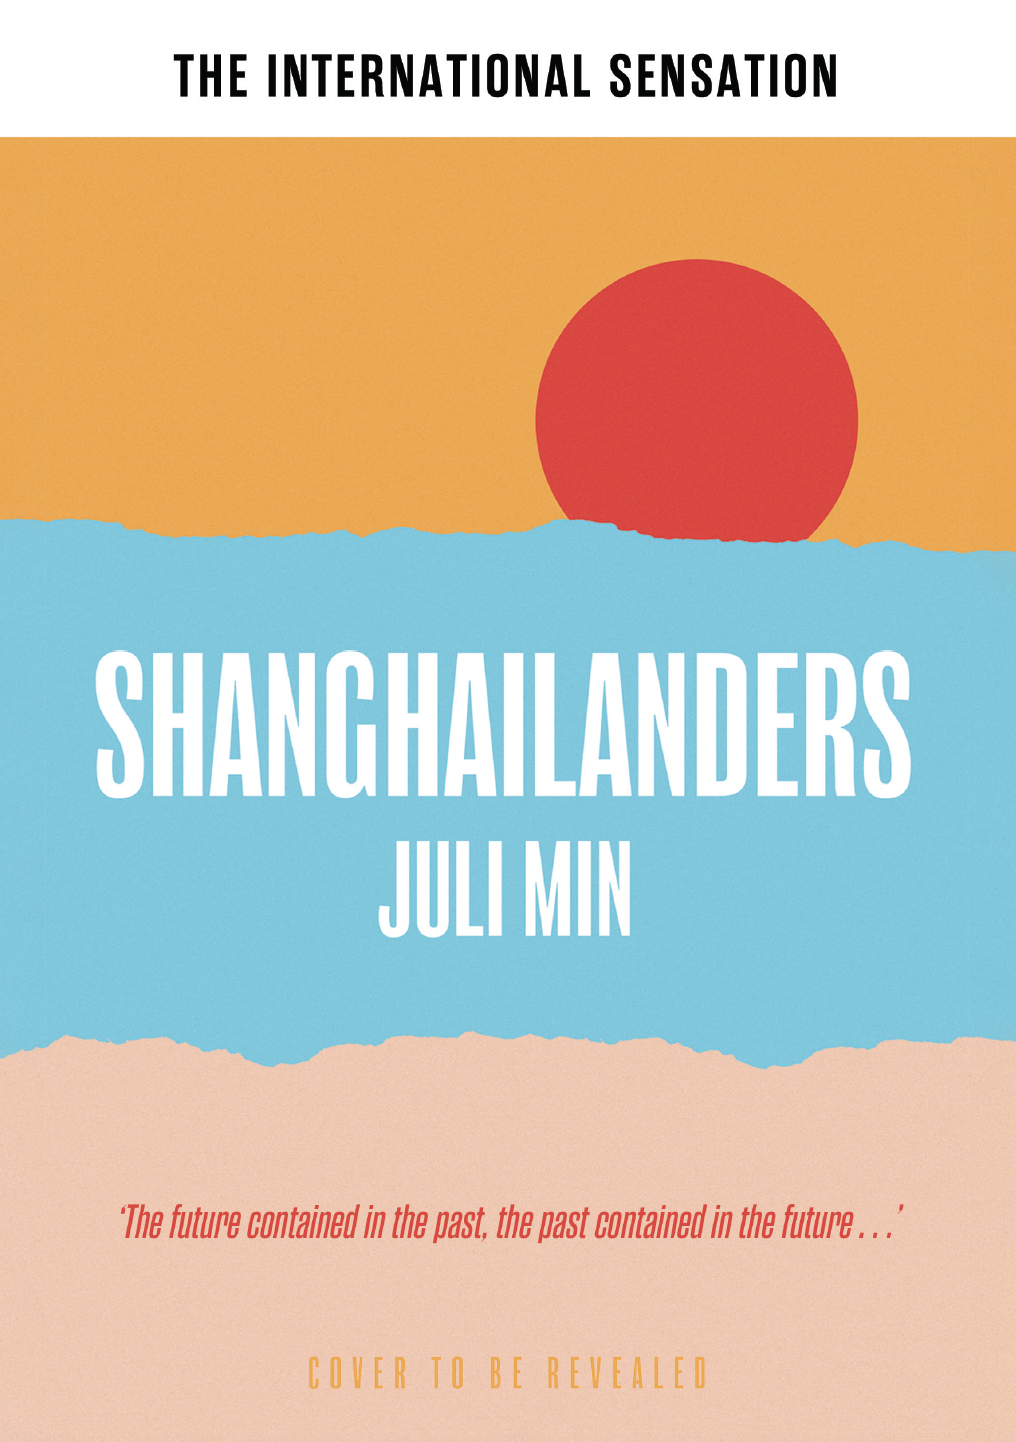 Shanghailanders by Juli Min